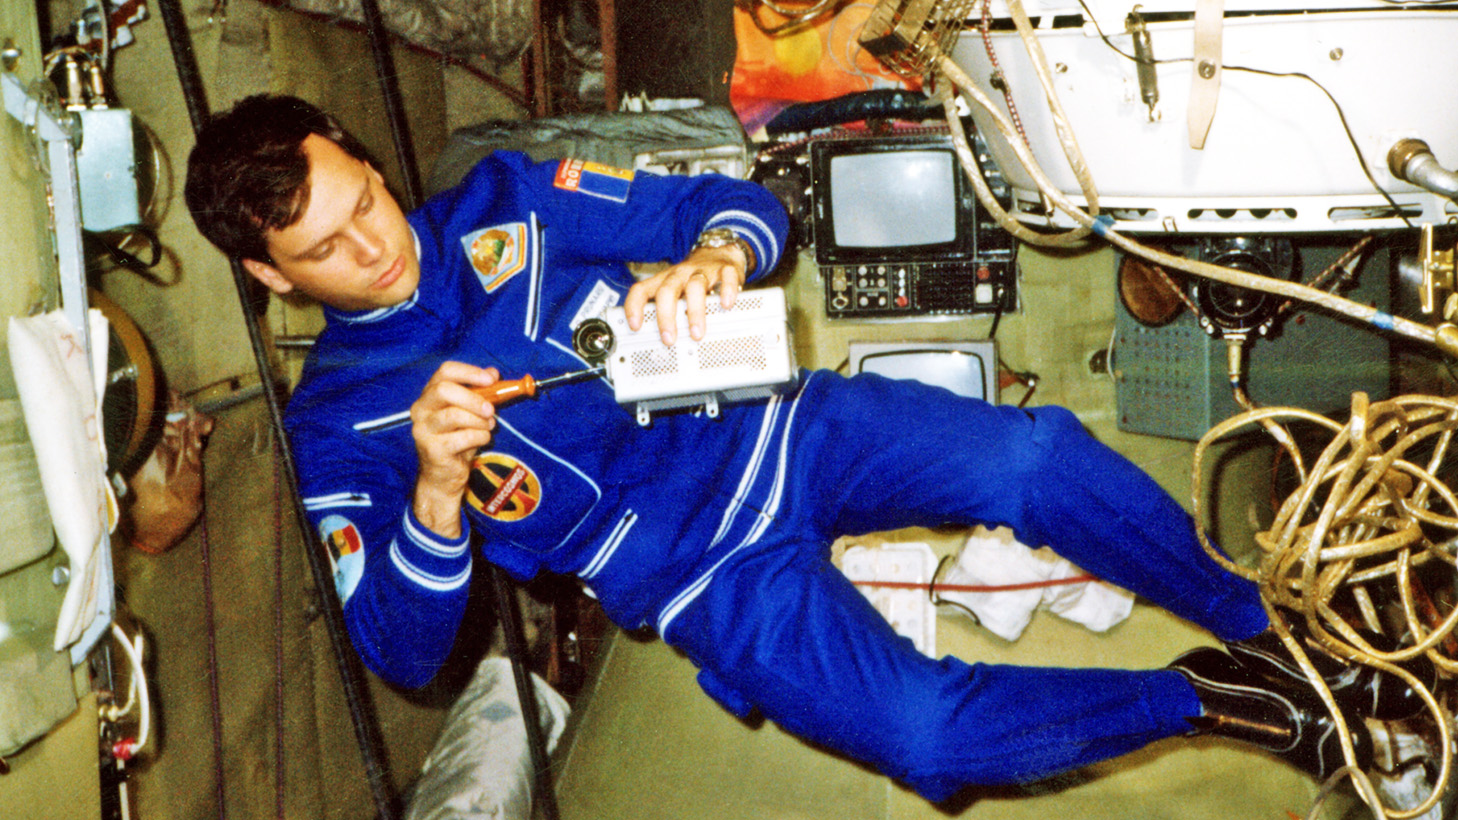 Romania trimite al doilea astronaut in spatiu. S-a dat startul inscrierilor. Ce spune Dumitru Prunariu: ”Vor conta studiile, sanatatea si varsta”